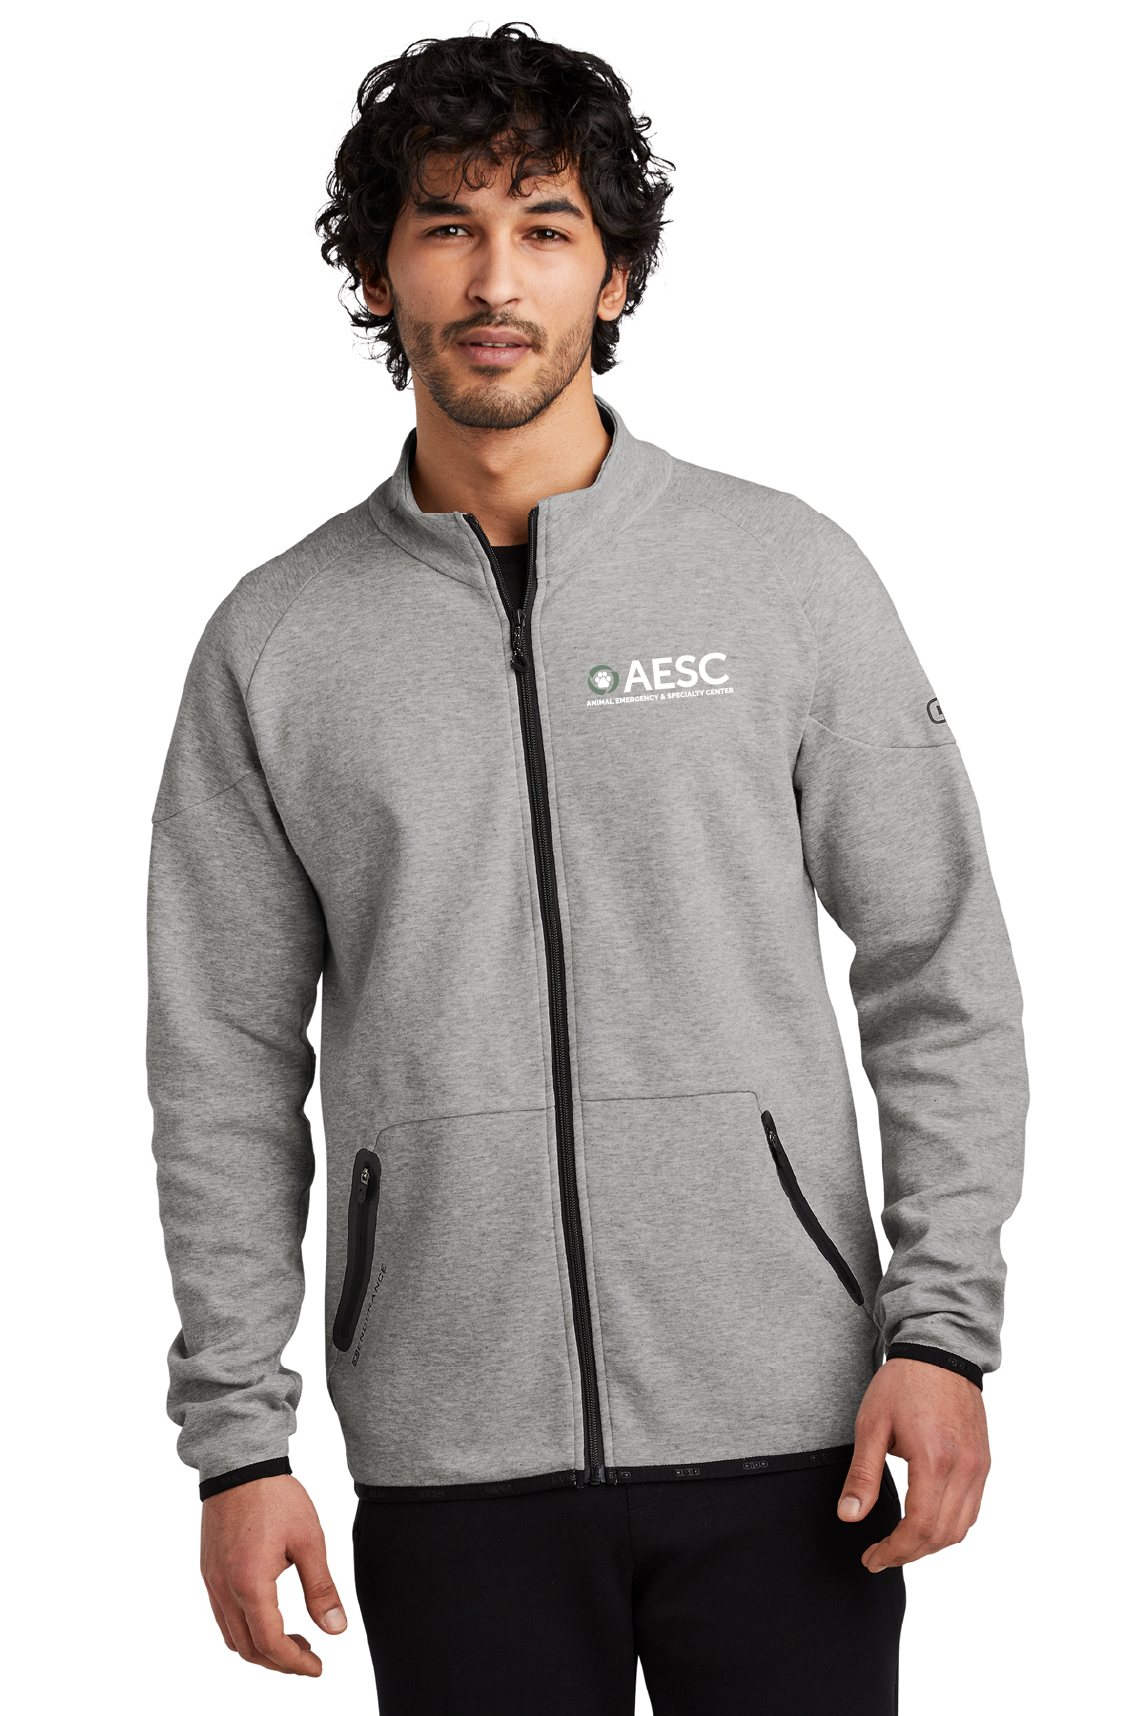 AESC Men’s OGIO – Jacket Aluminum Grey